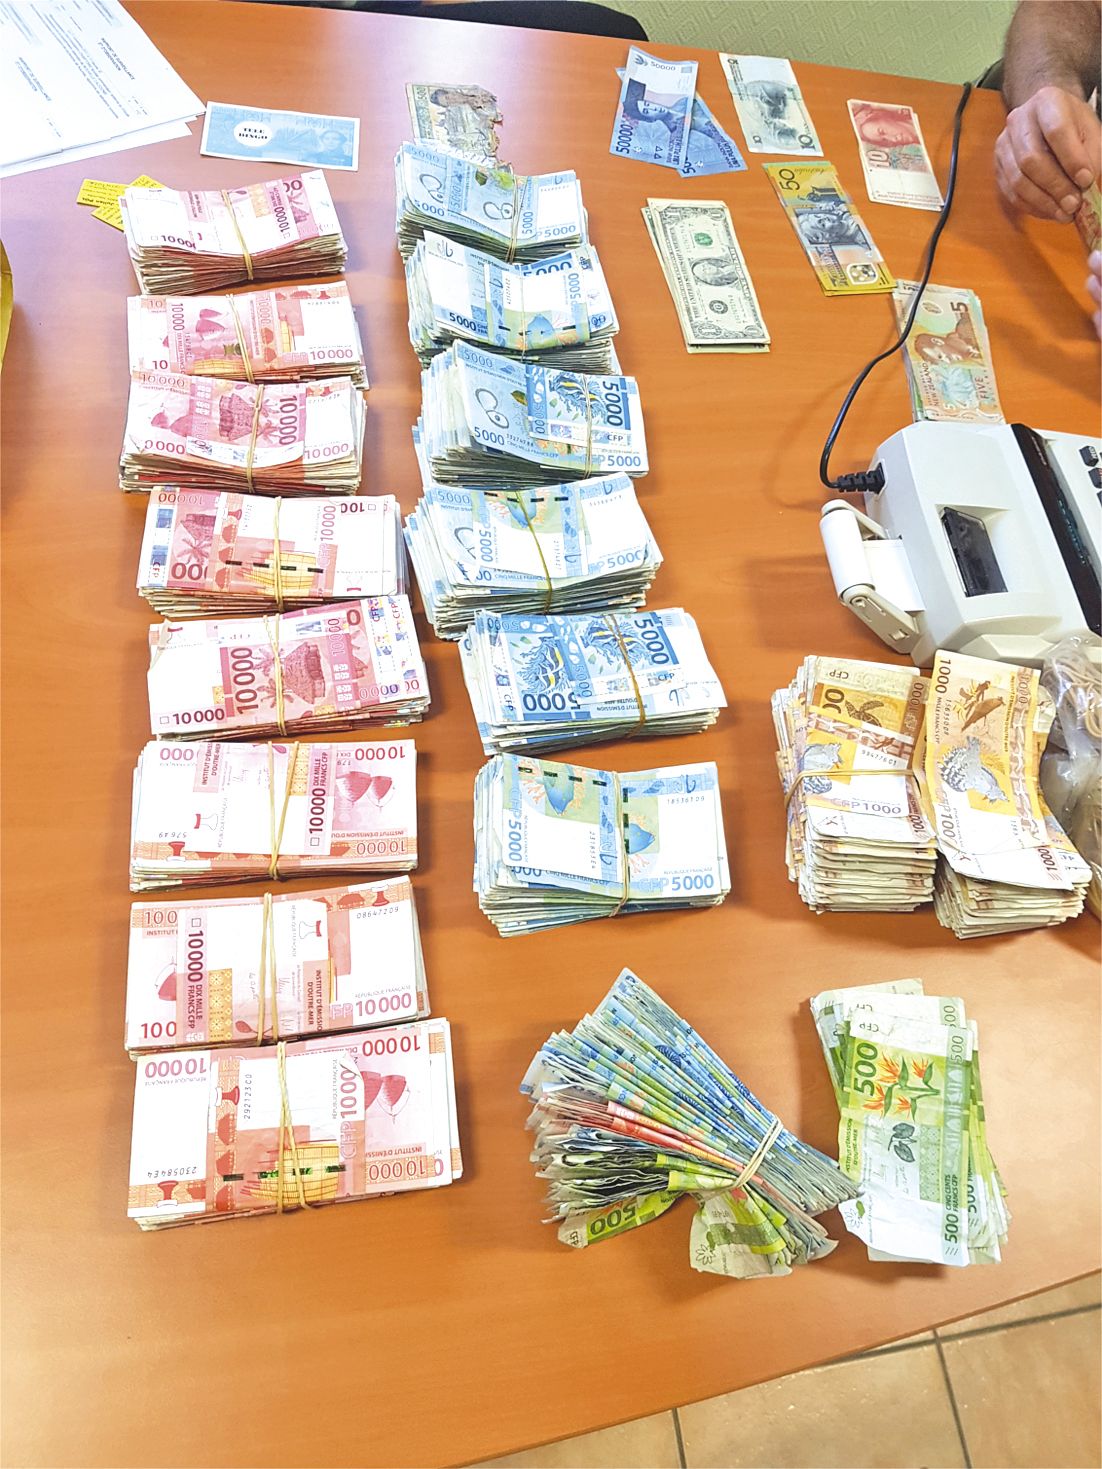 Les gendarmes ont mené plusieurs perquisitions aboutissant à la découverte de 18 millions de francs en espèces, de devises étrangères et « de nombreux documents compromettants ».